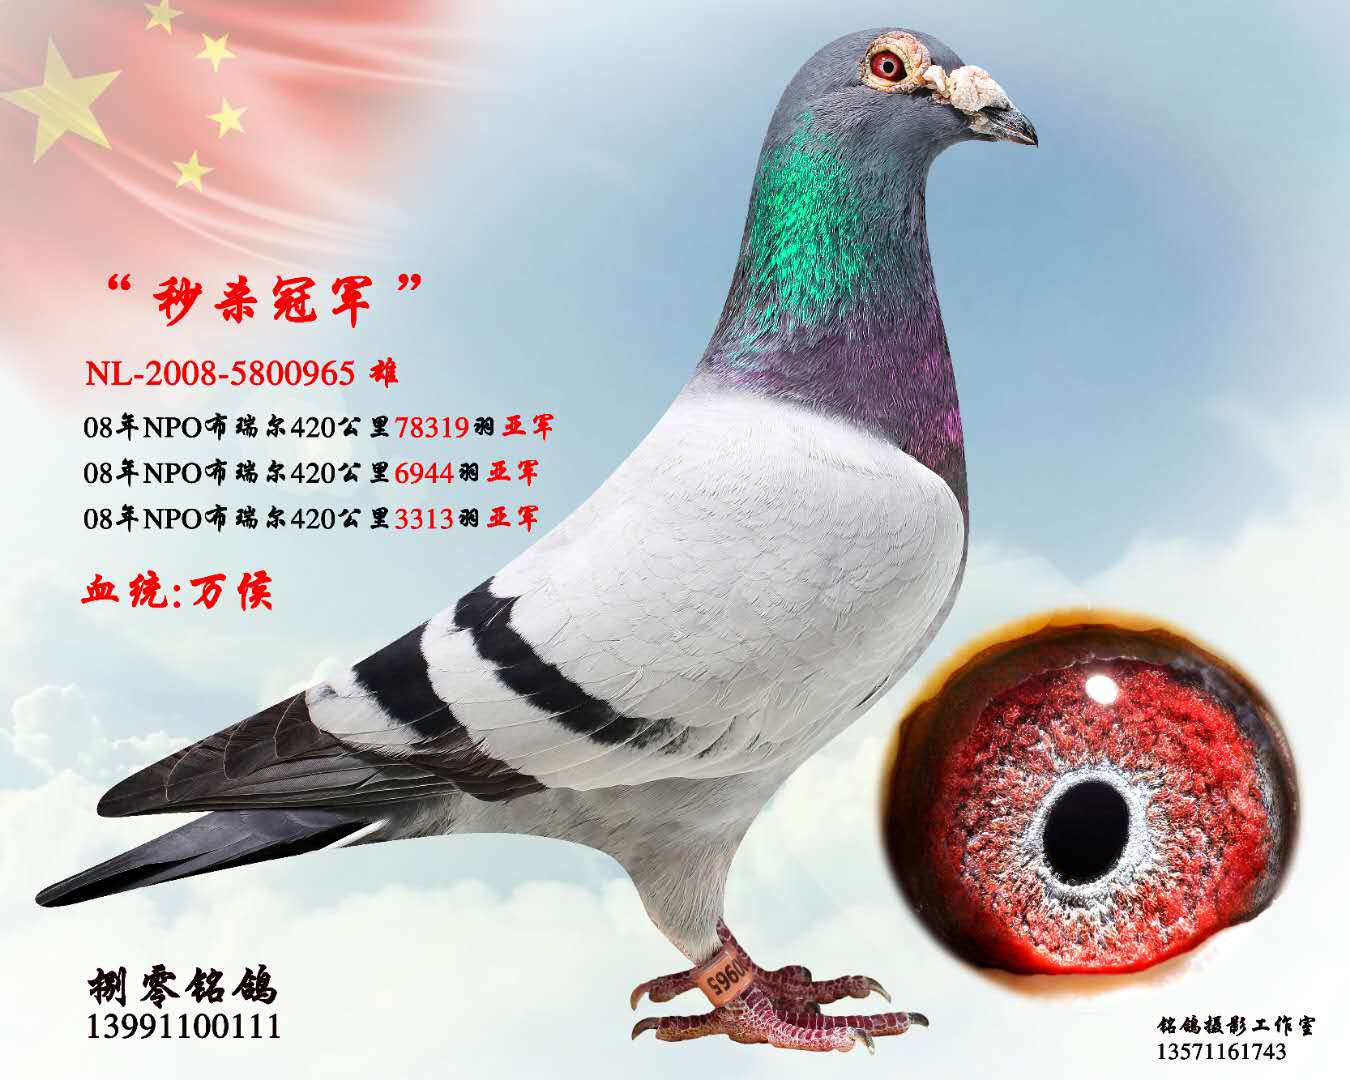 超级金母_宝隆鸽业_ ag188.com爱鸽商城_中国信鸽信息网